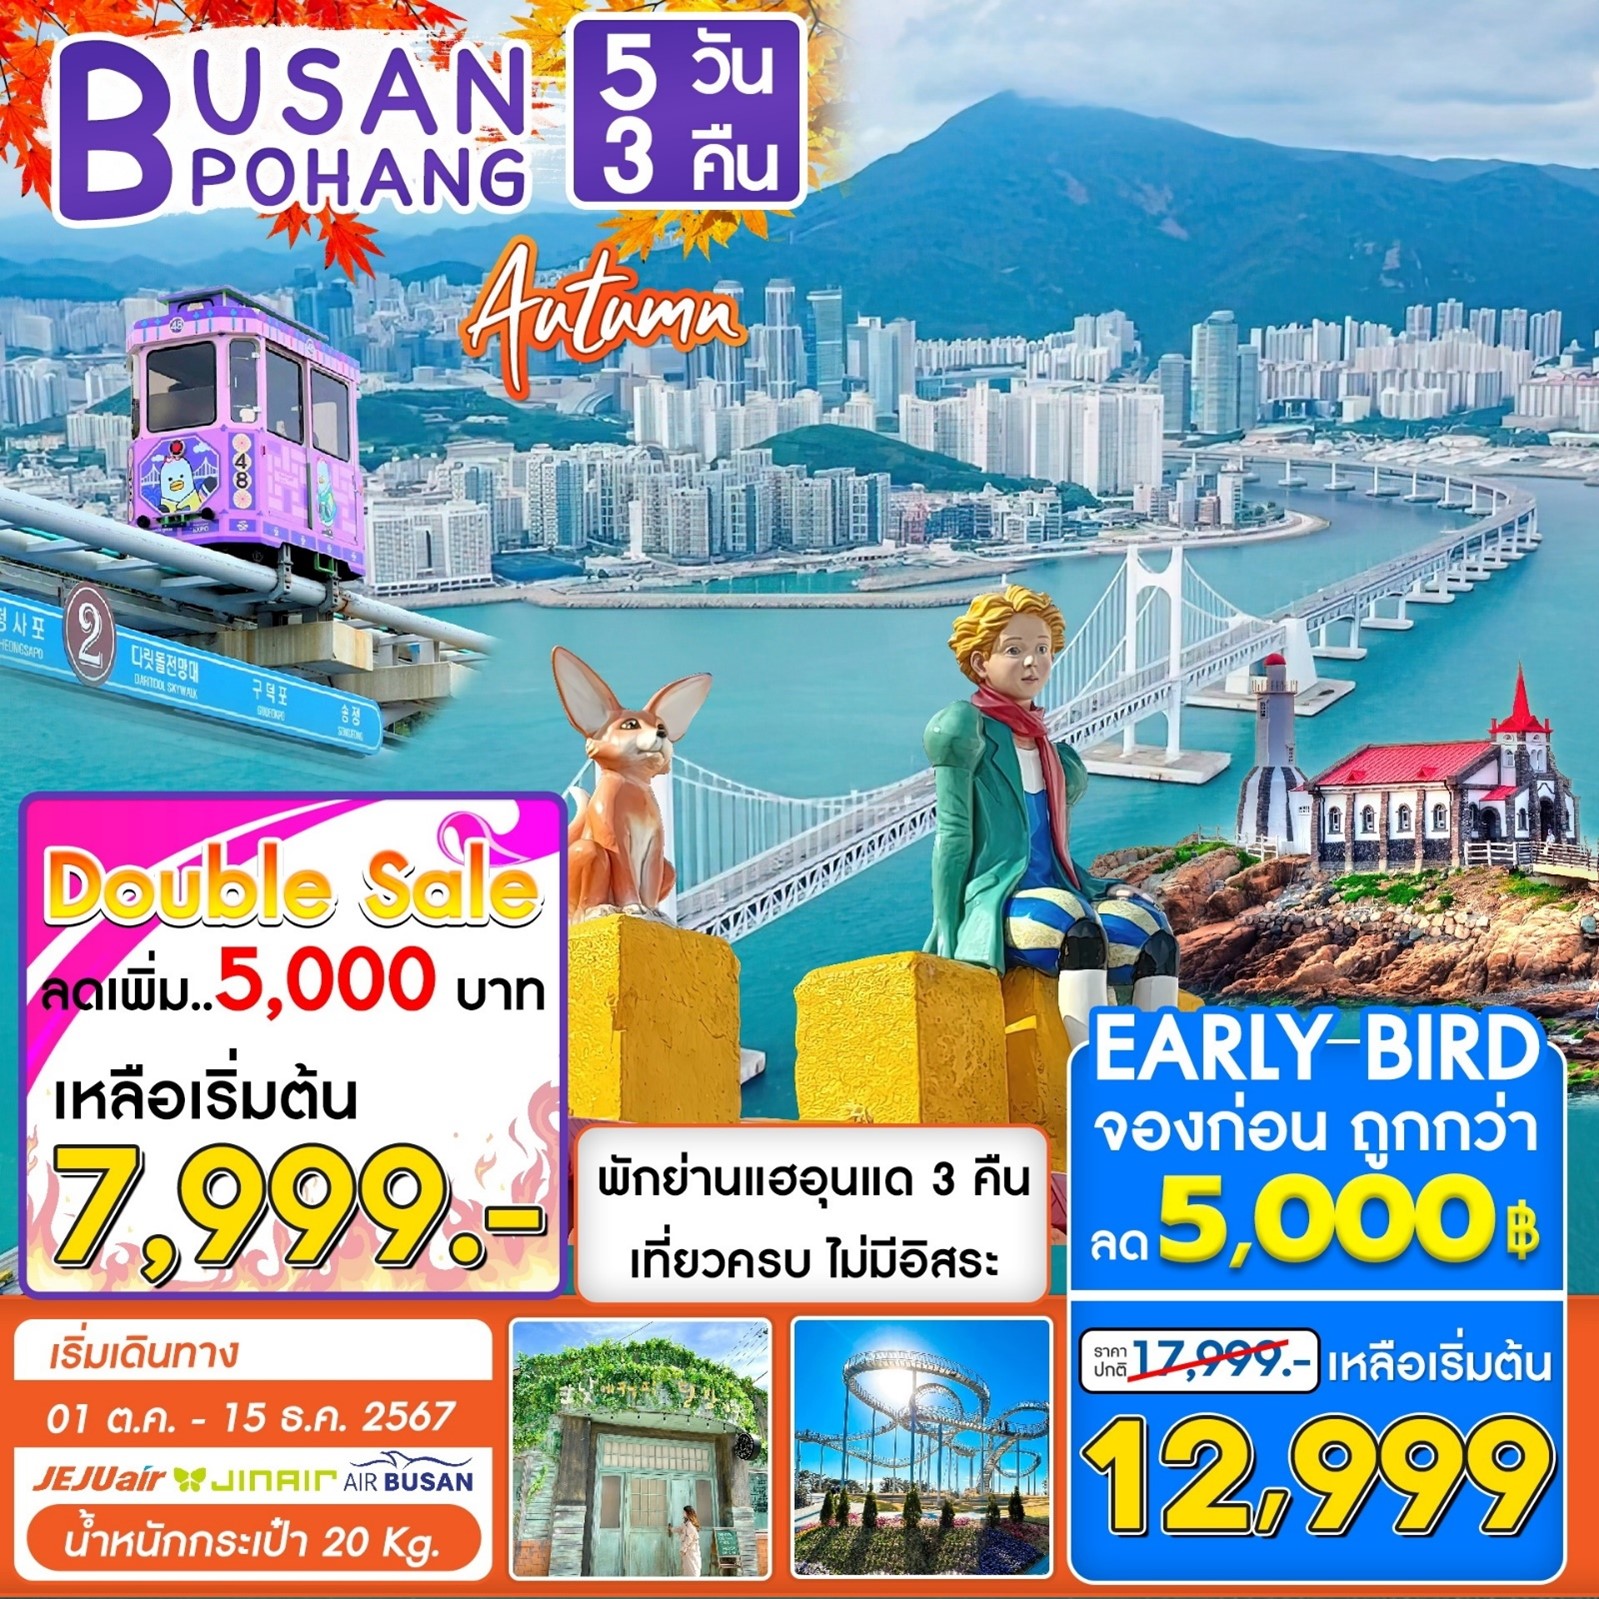 ทัวร์ปูซาน  Busan Pohang Special 5D3N 